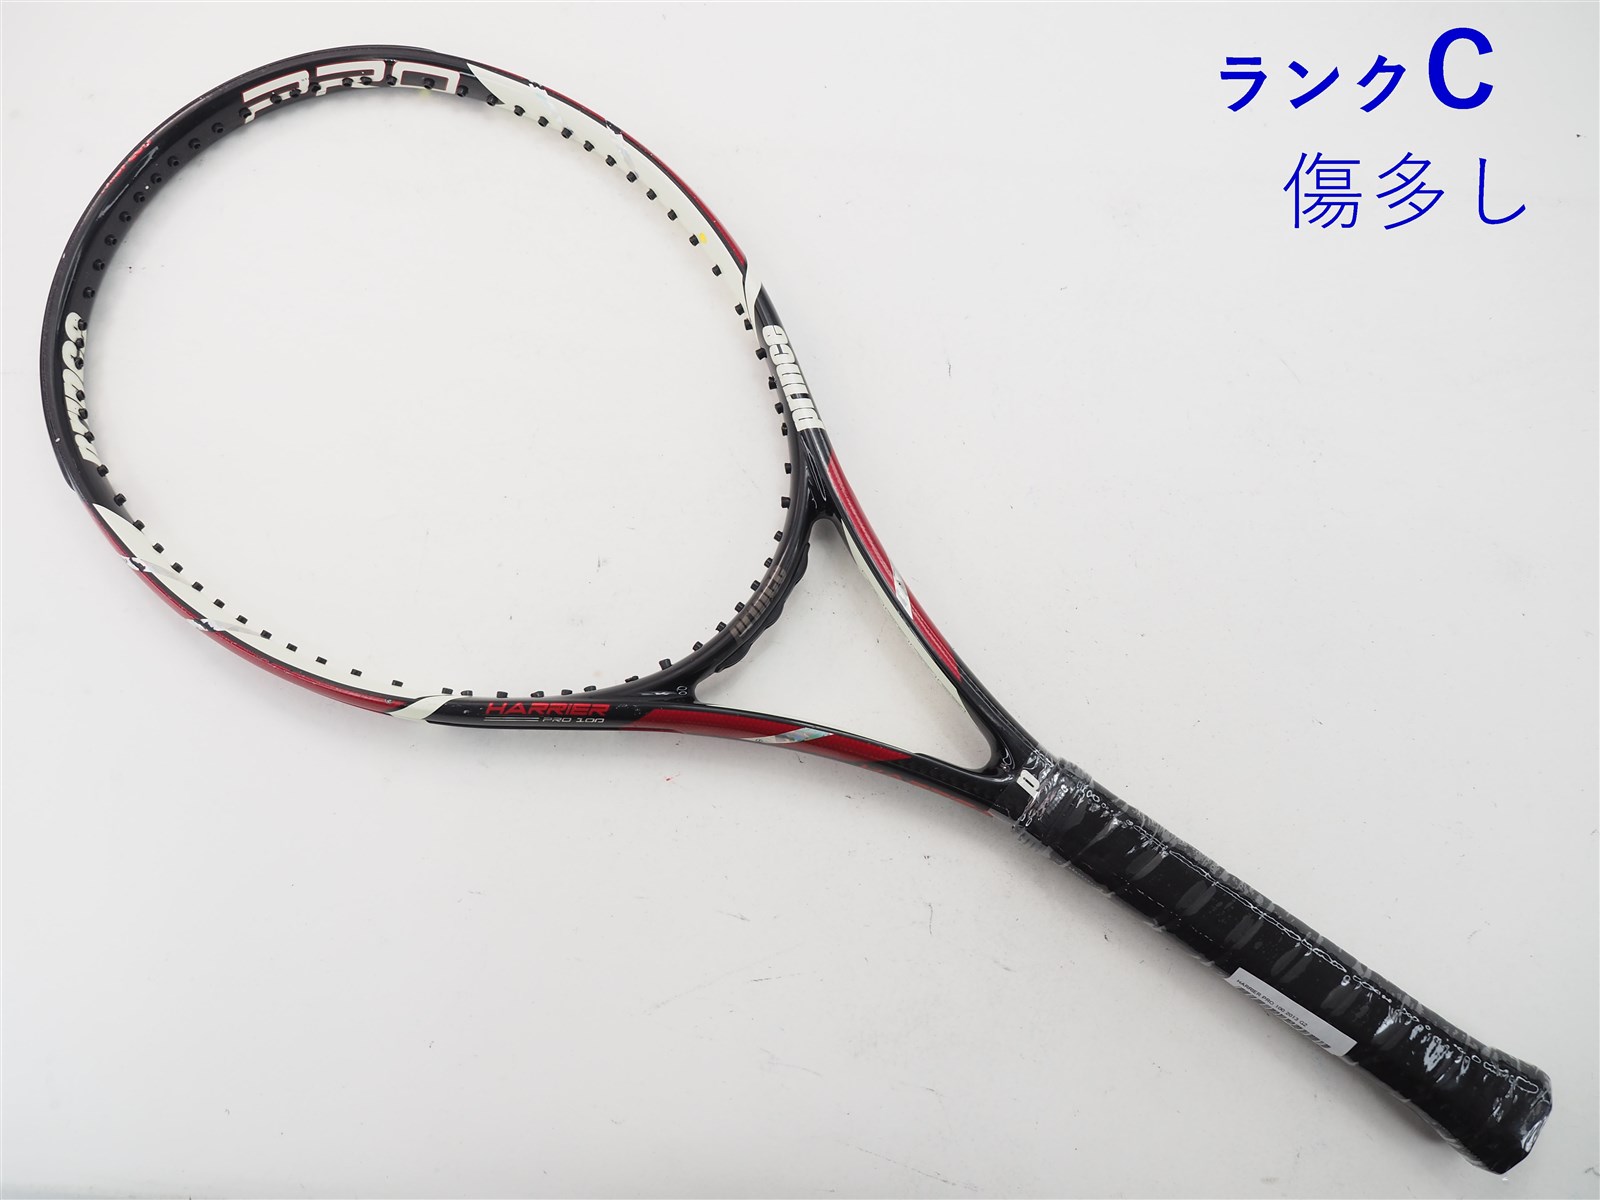 テニスラケット バボラ アエロ プロ チーム 2013年モデル【一部